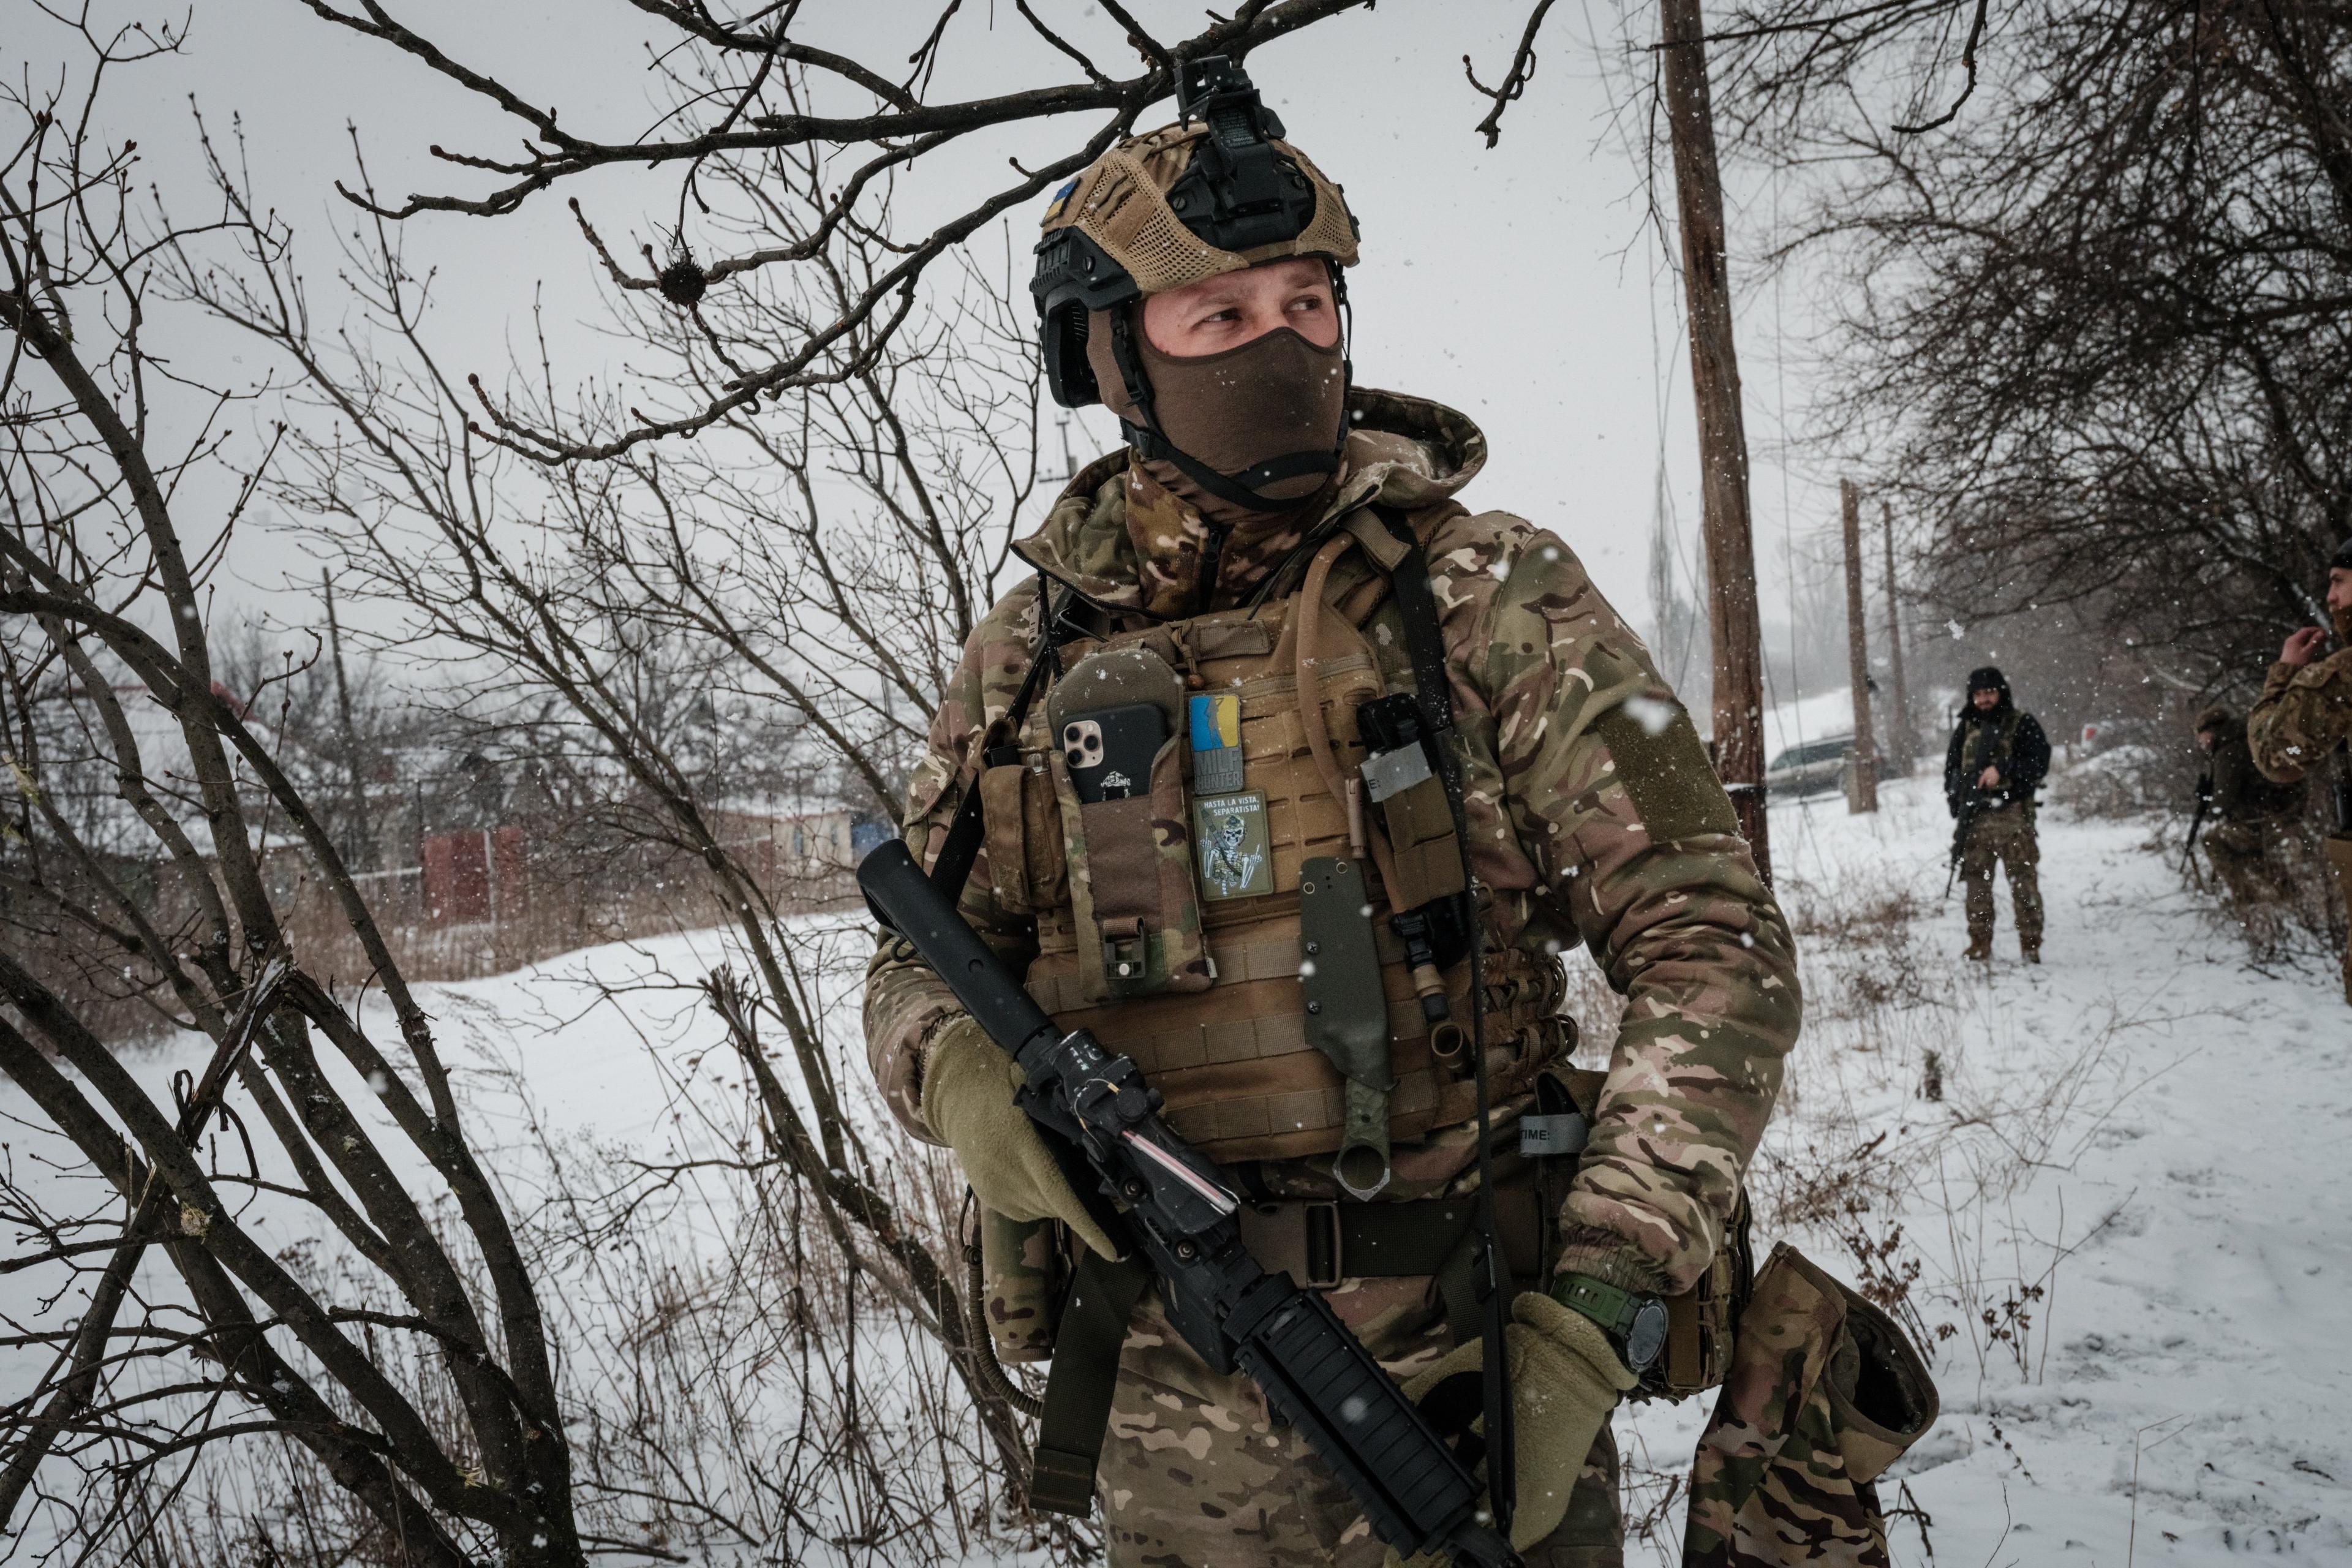 Zołnierz w bojowym rynsztunku z ukraińskimi oznaczeniami stoi na ośnieżonym polu